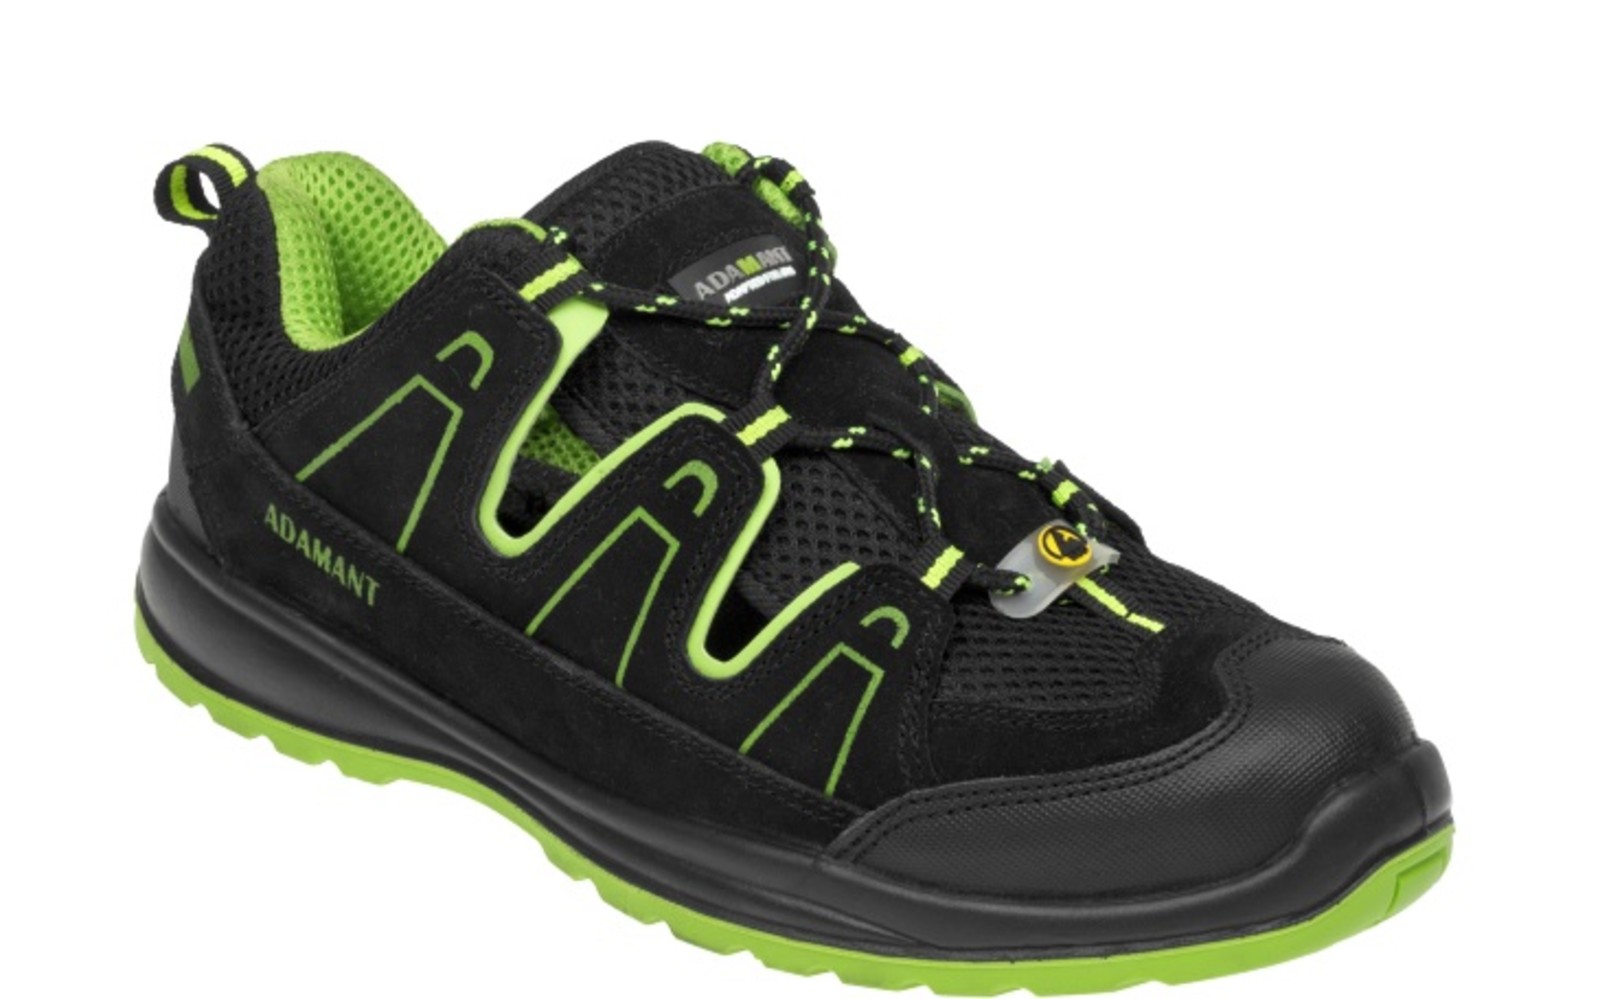 Bezpečnostné sandále Adamant Alegro S1 ESD - veľkosť: 46, farba: čierna/zelená